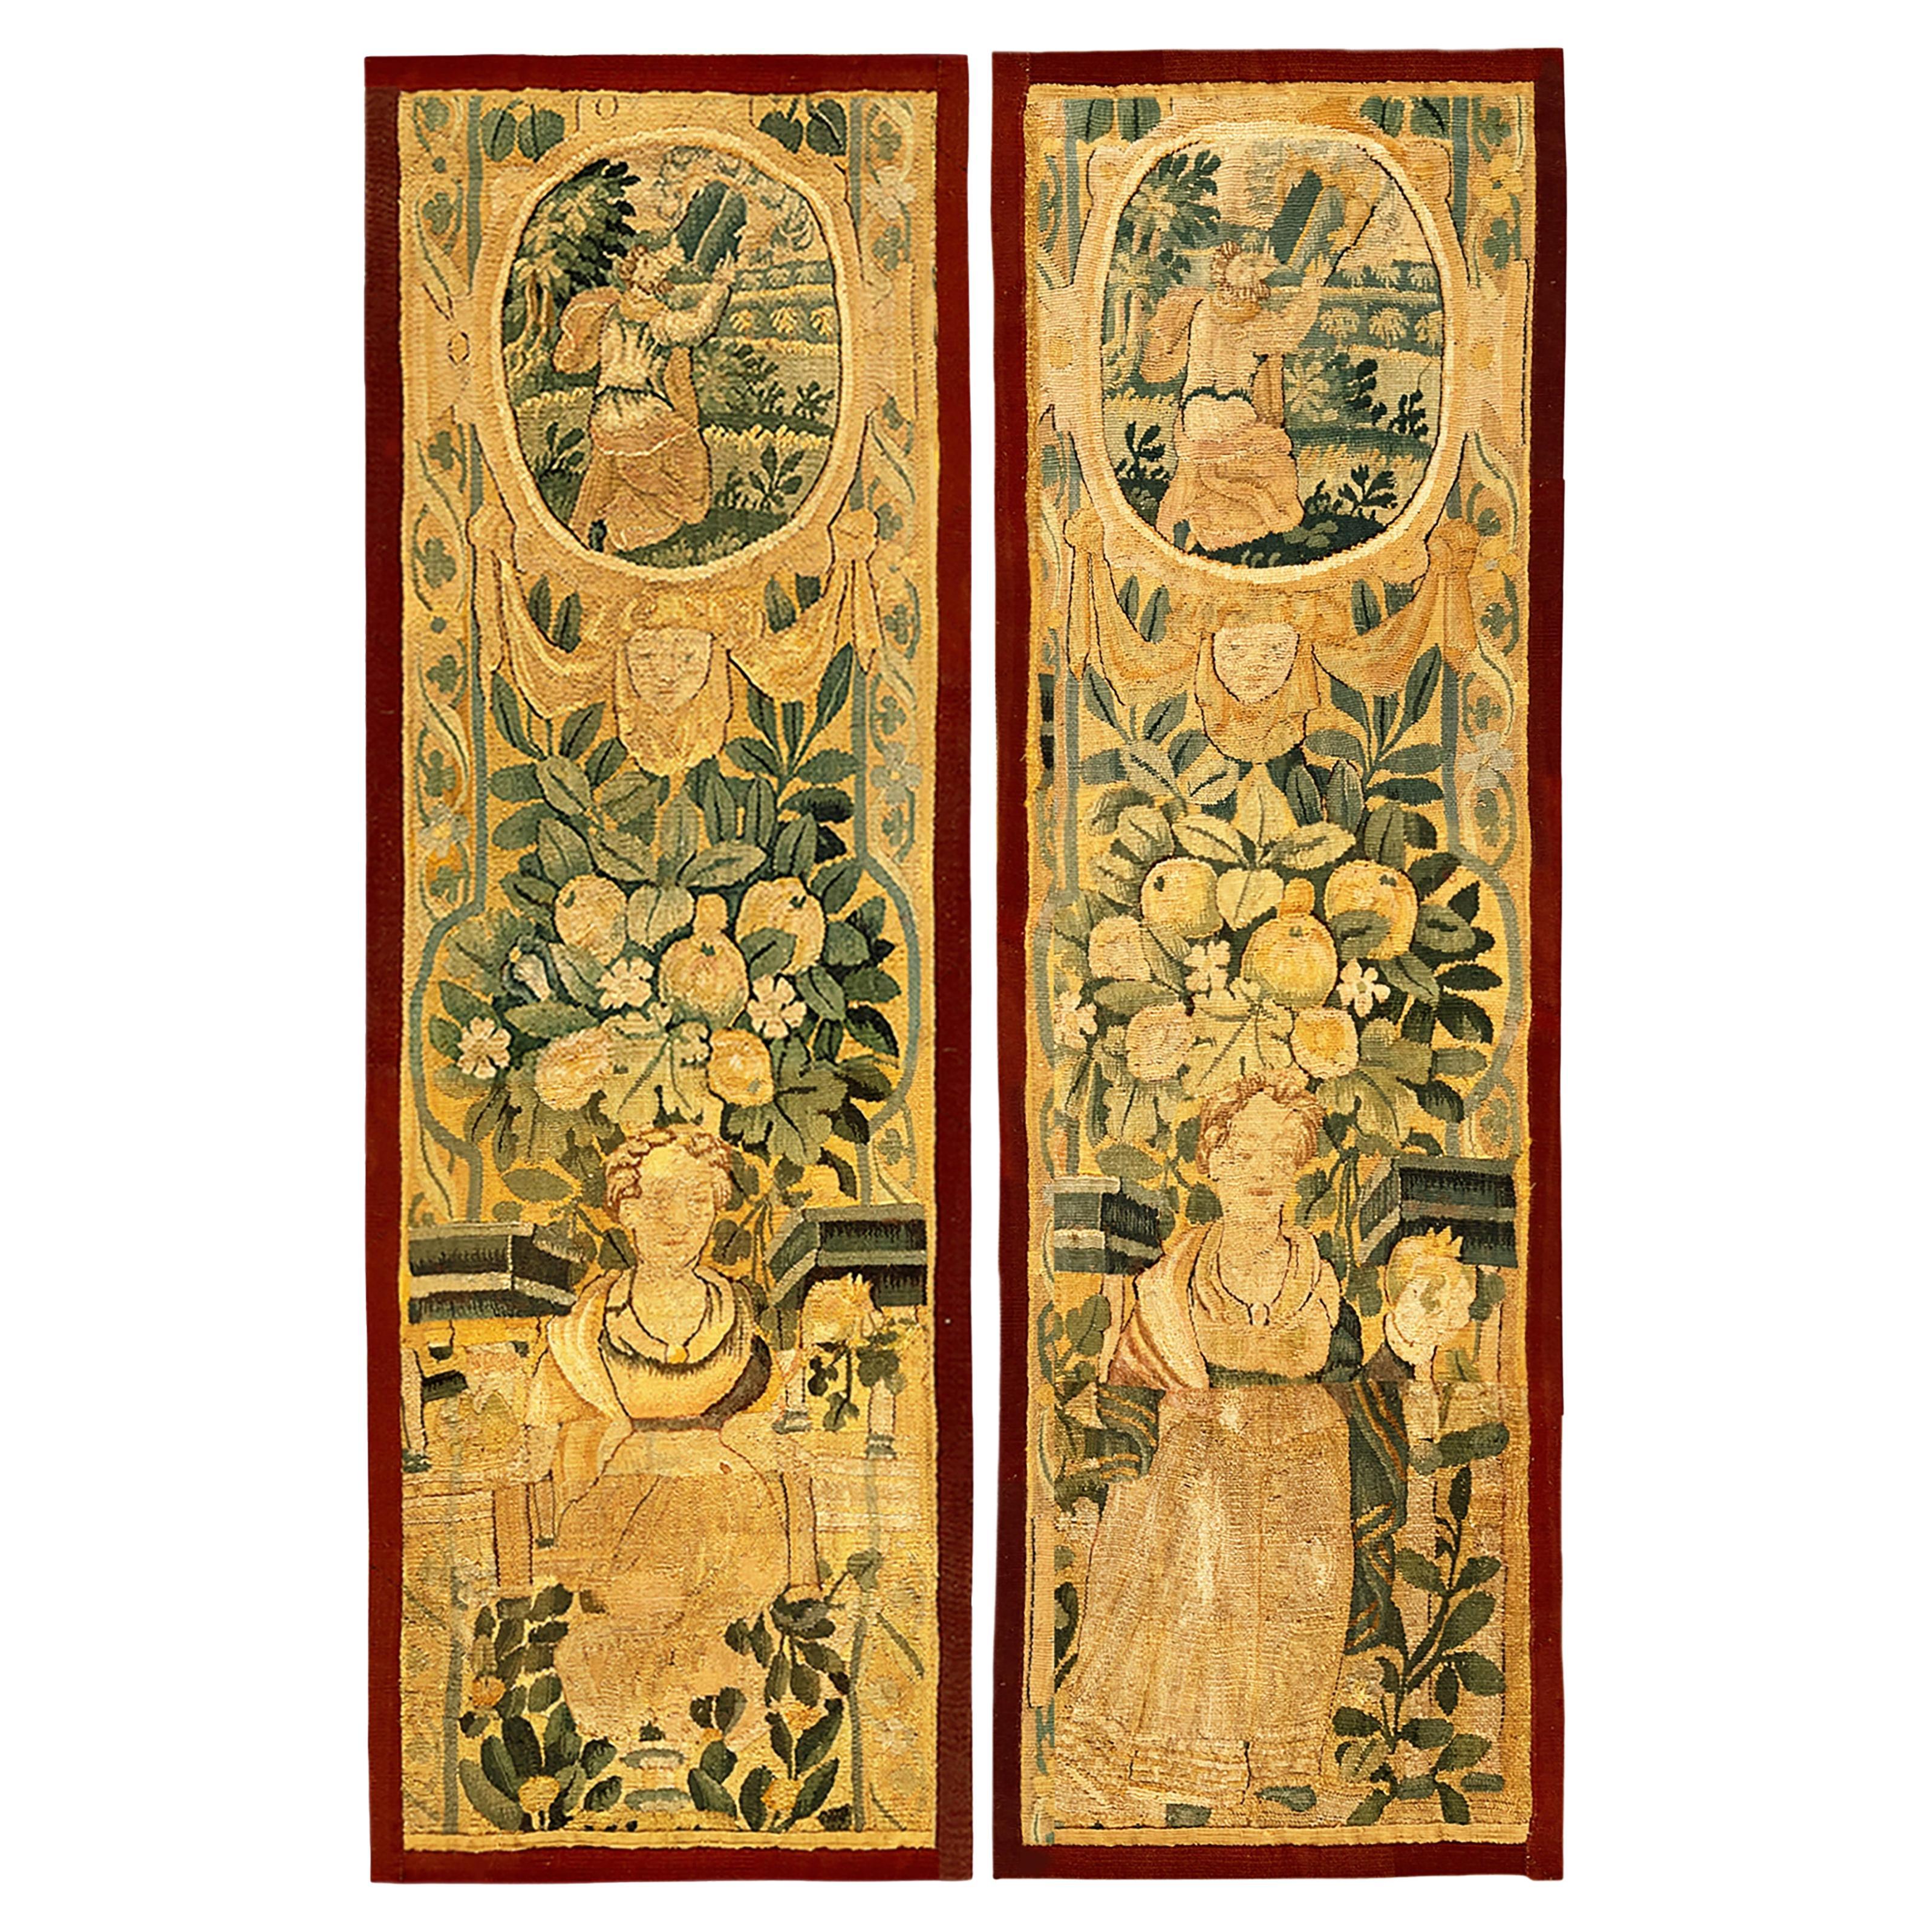 Ein Paar flämische historische Wandteppiche aus dem 17. Jahrhundert, vertikale, weibliche Figuren